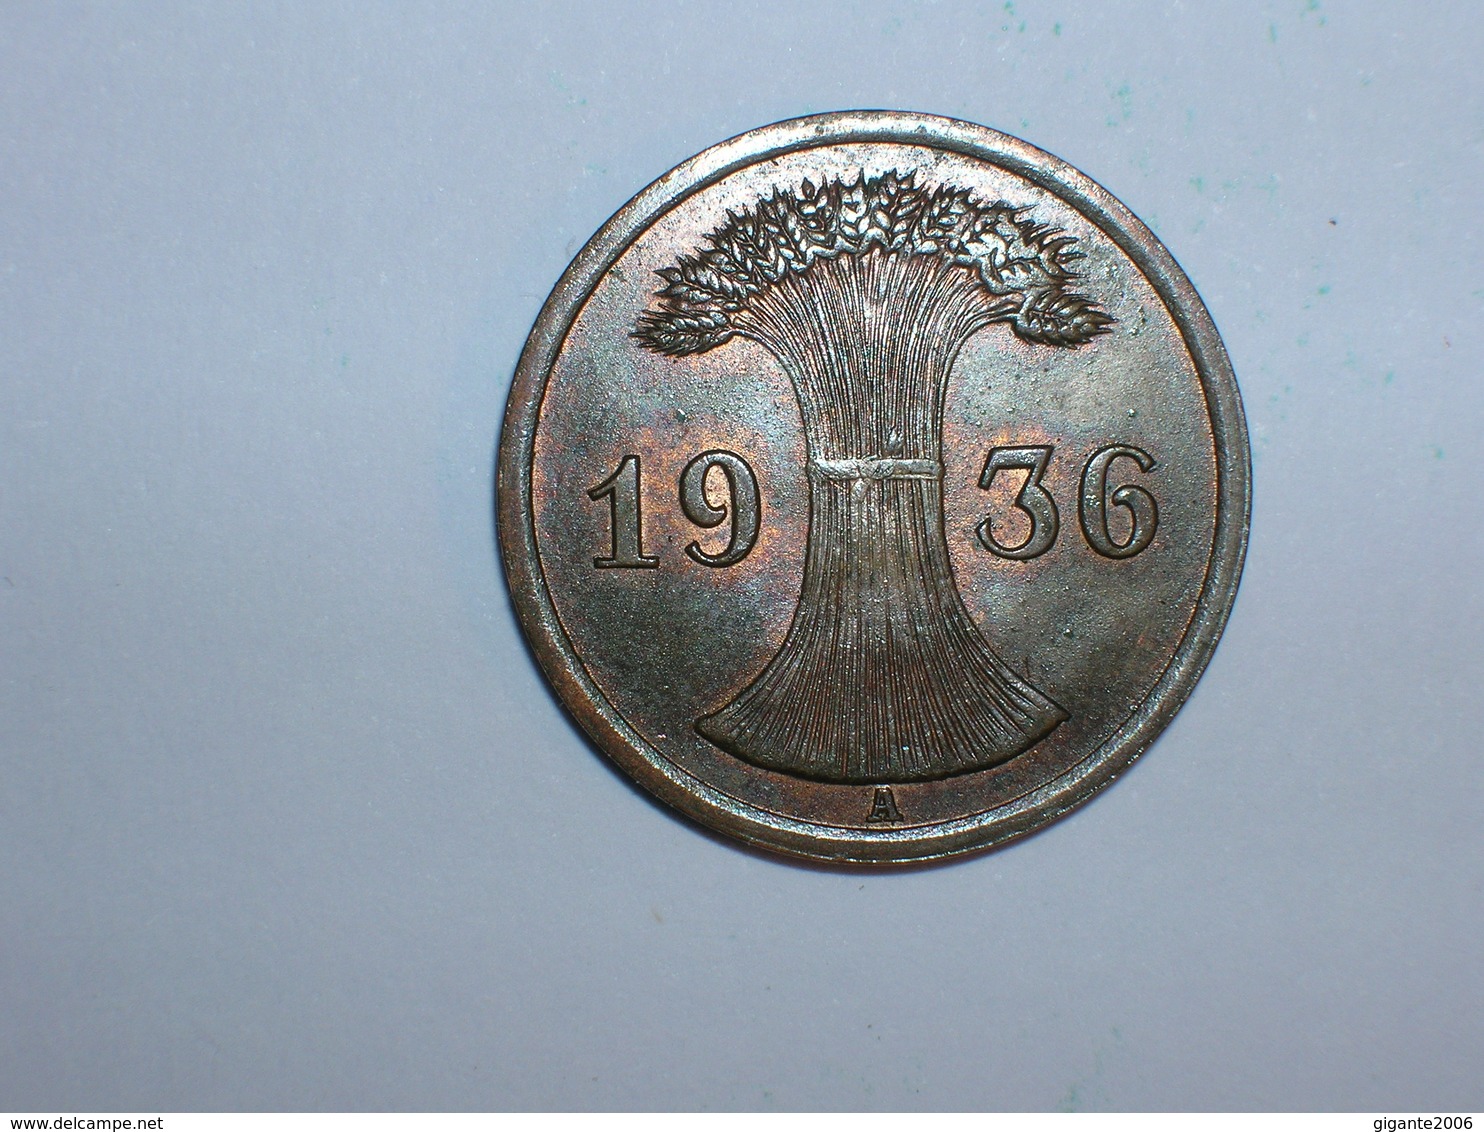 ALEMANIA 1 REICHPFENNIG 1936 A (1177) - 2 Reichspfennig